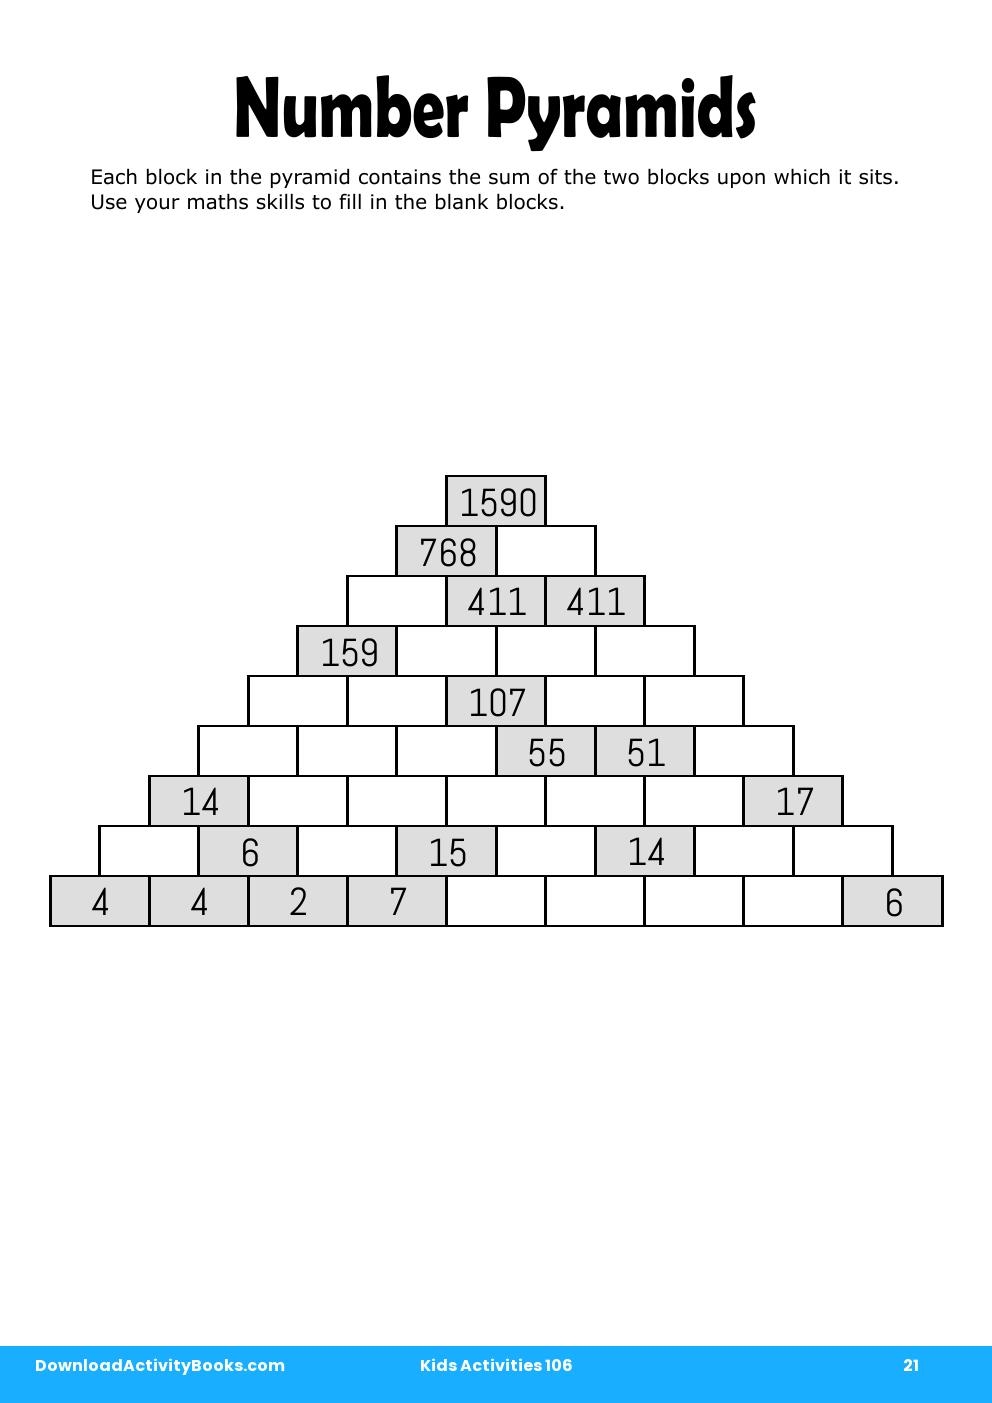 Number Pyramids in Kids Activities 106